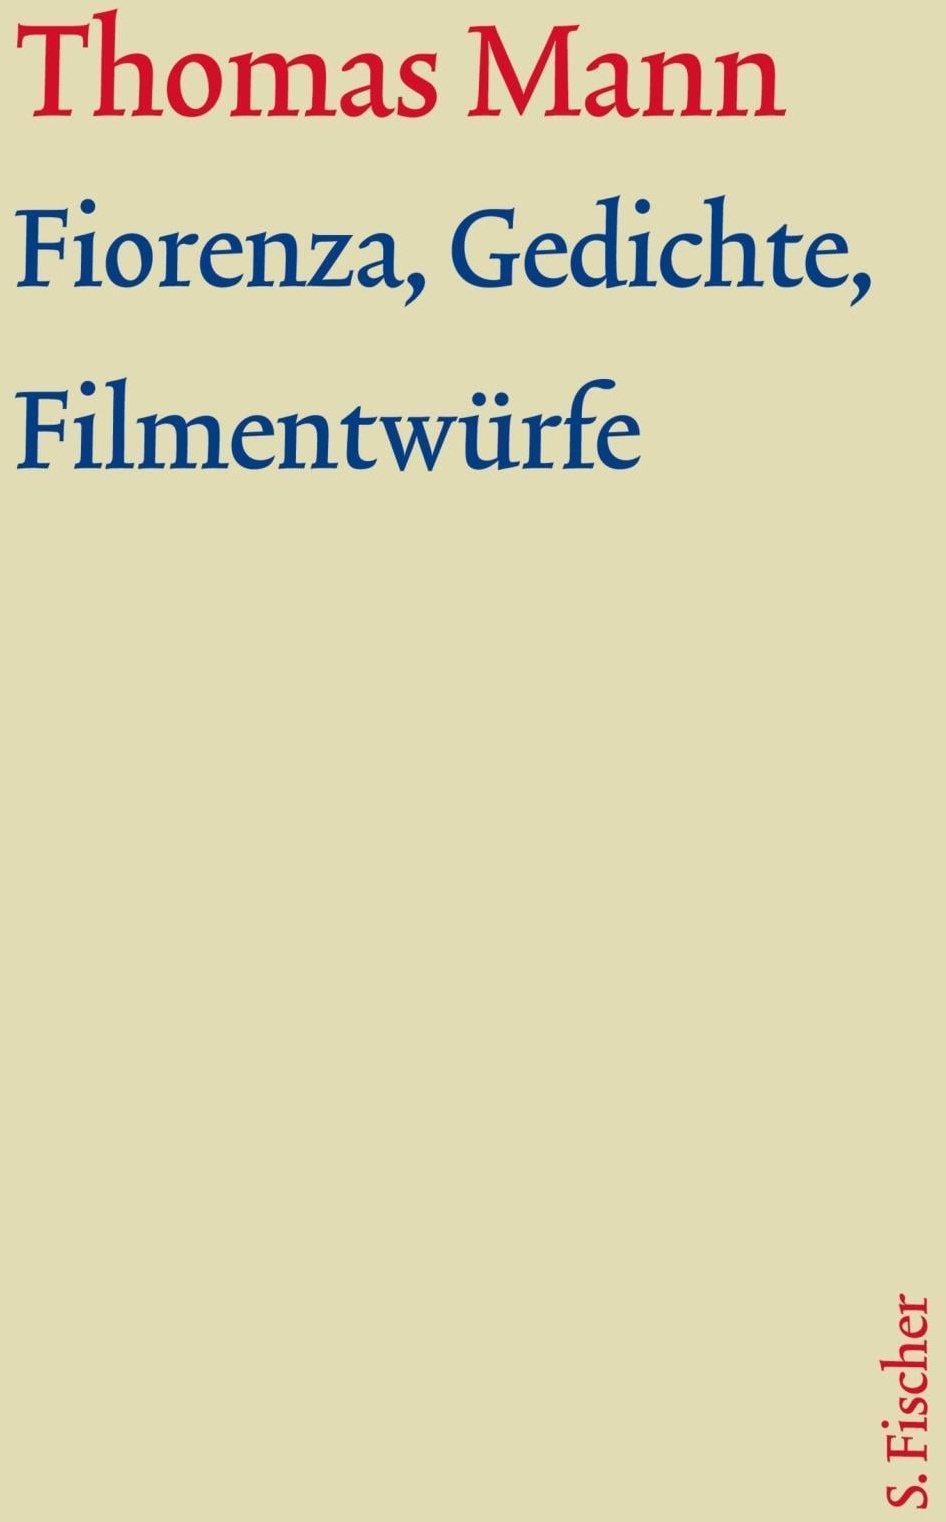 Werke - Briefe - Tagebücher. GKFA (Band 3.1): Fiorenza, Gedichte, Filmentwürfe, Belletristik von Thomas Mann